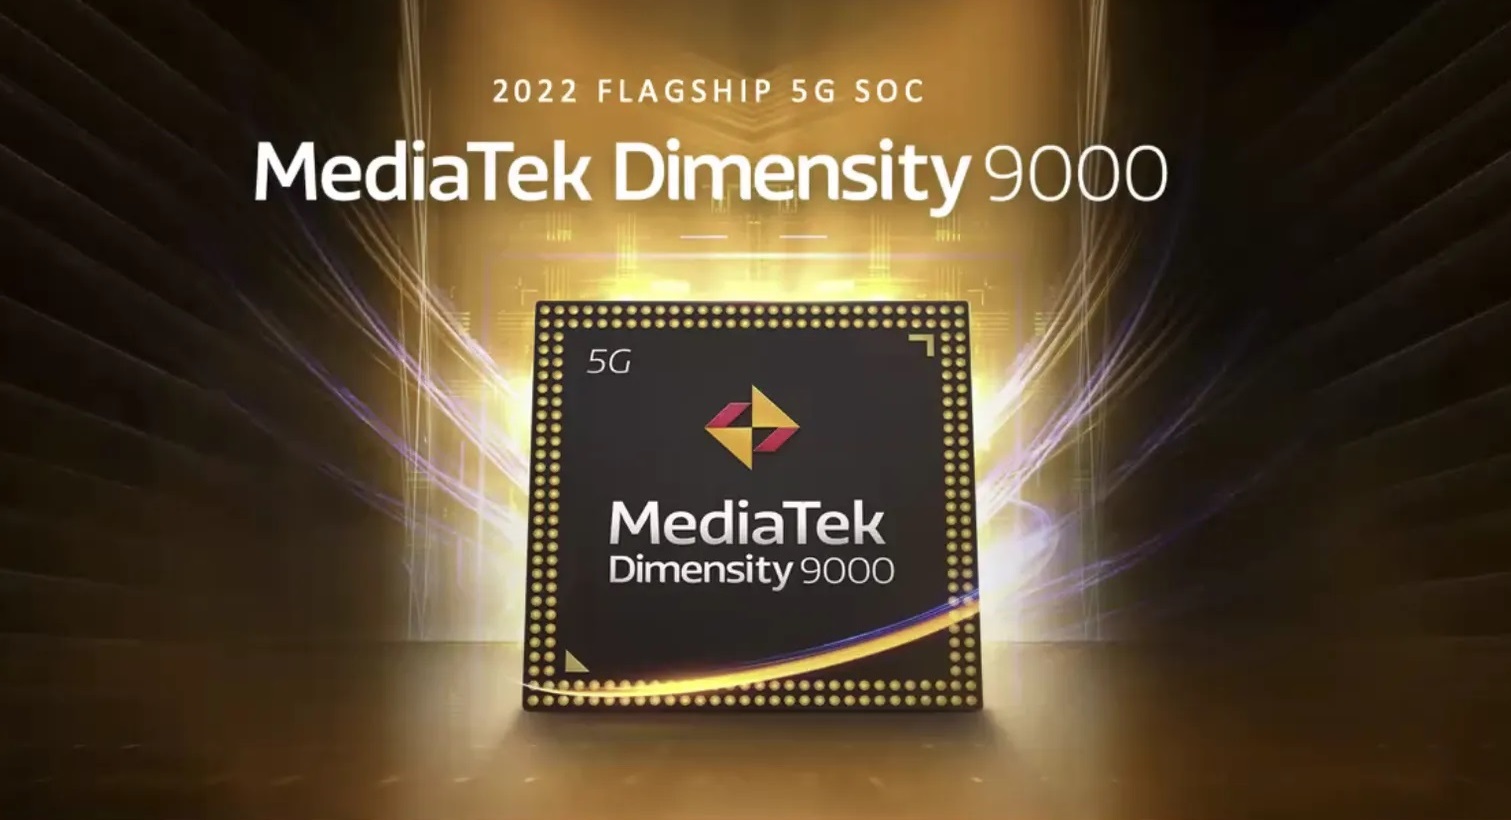 Η MediaTek φιλοδοξεί να ανταγωνιστεί τις ναυαρχίδες της Qualcomm με το Dimensity 9000 SoC